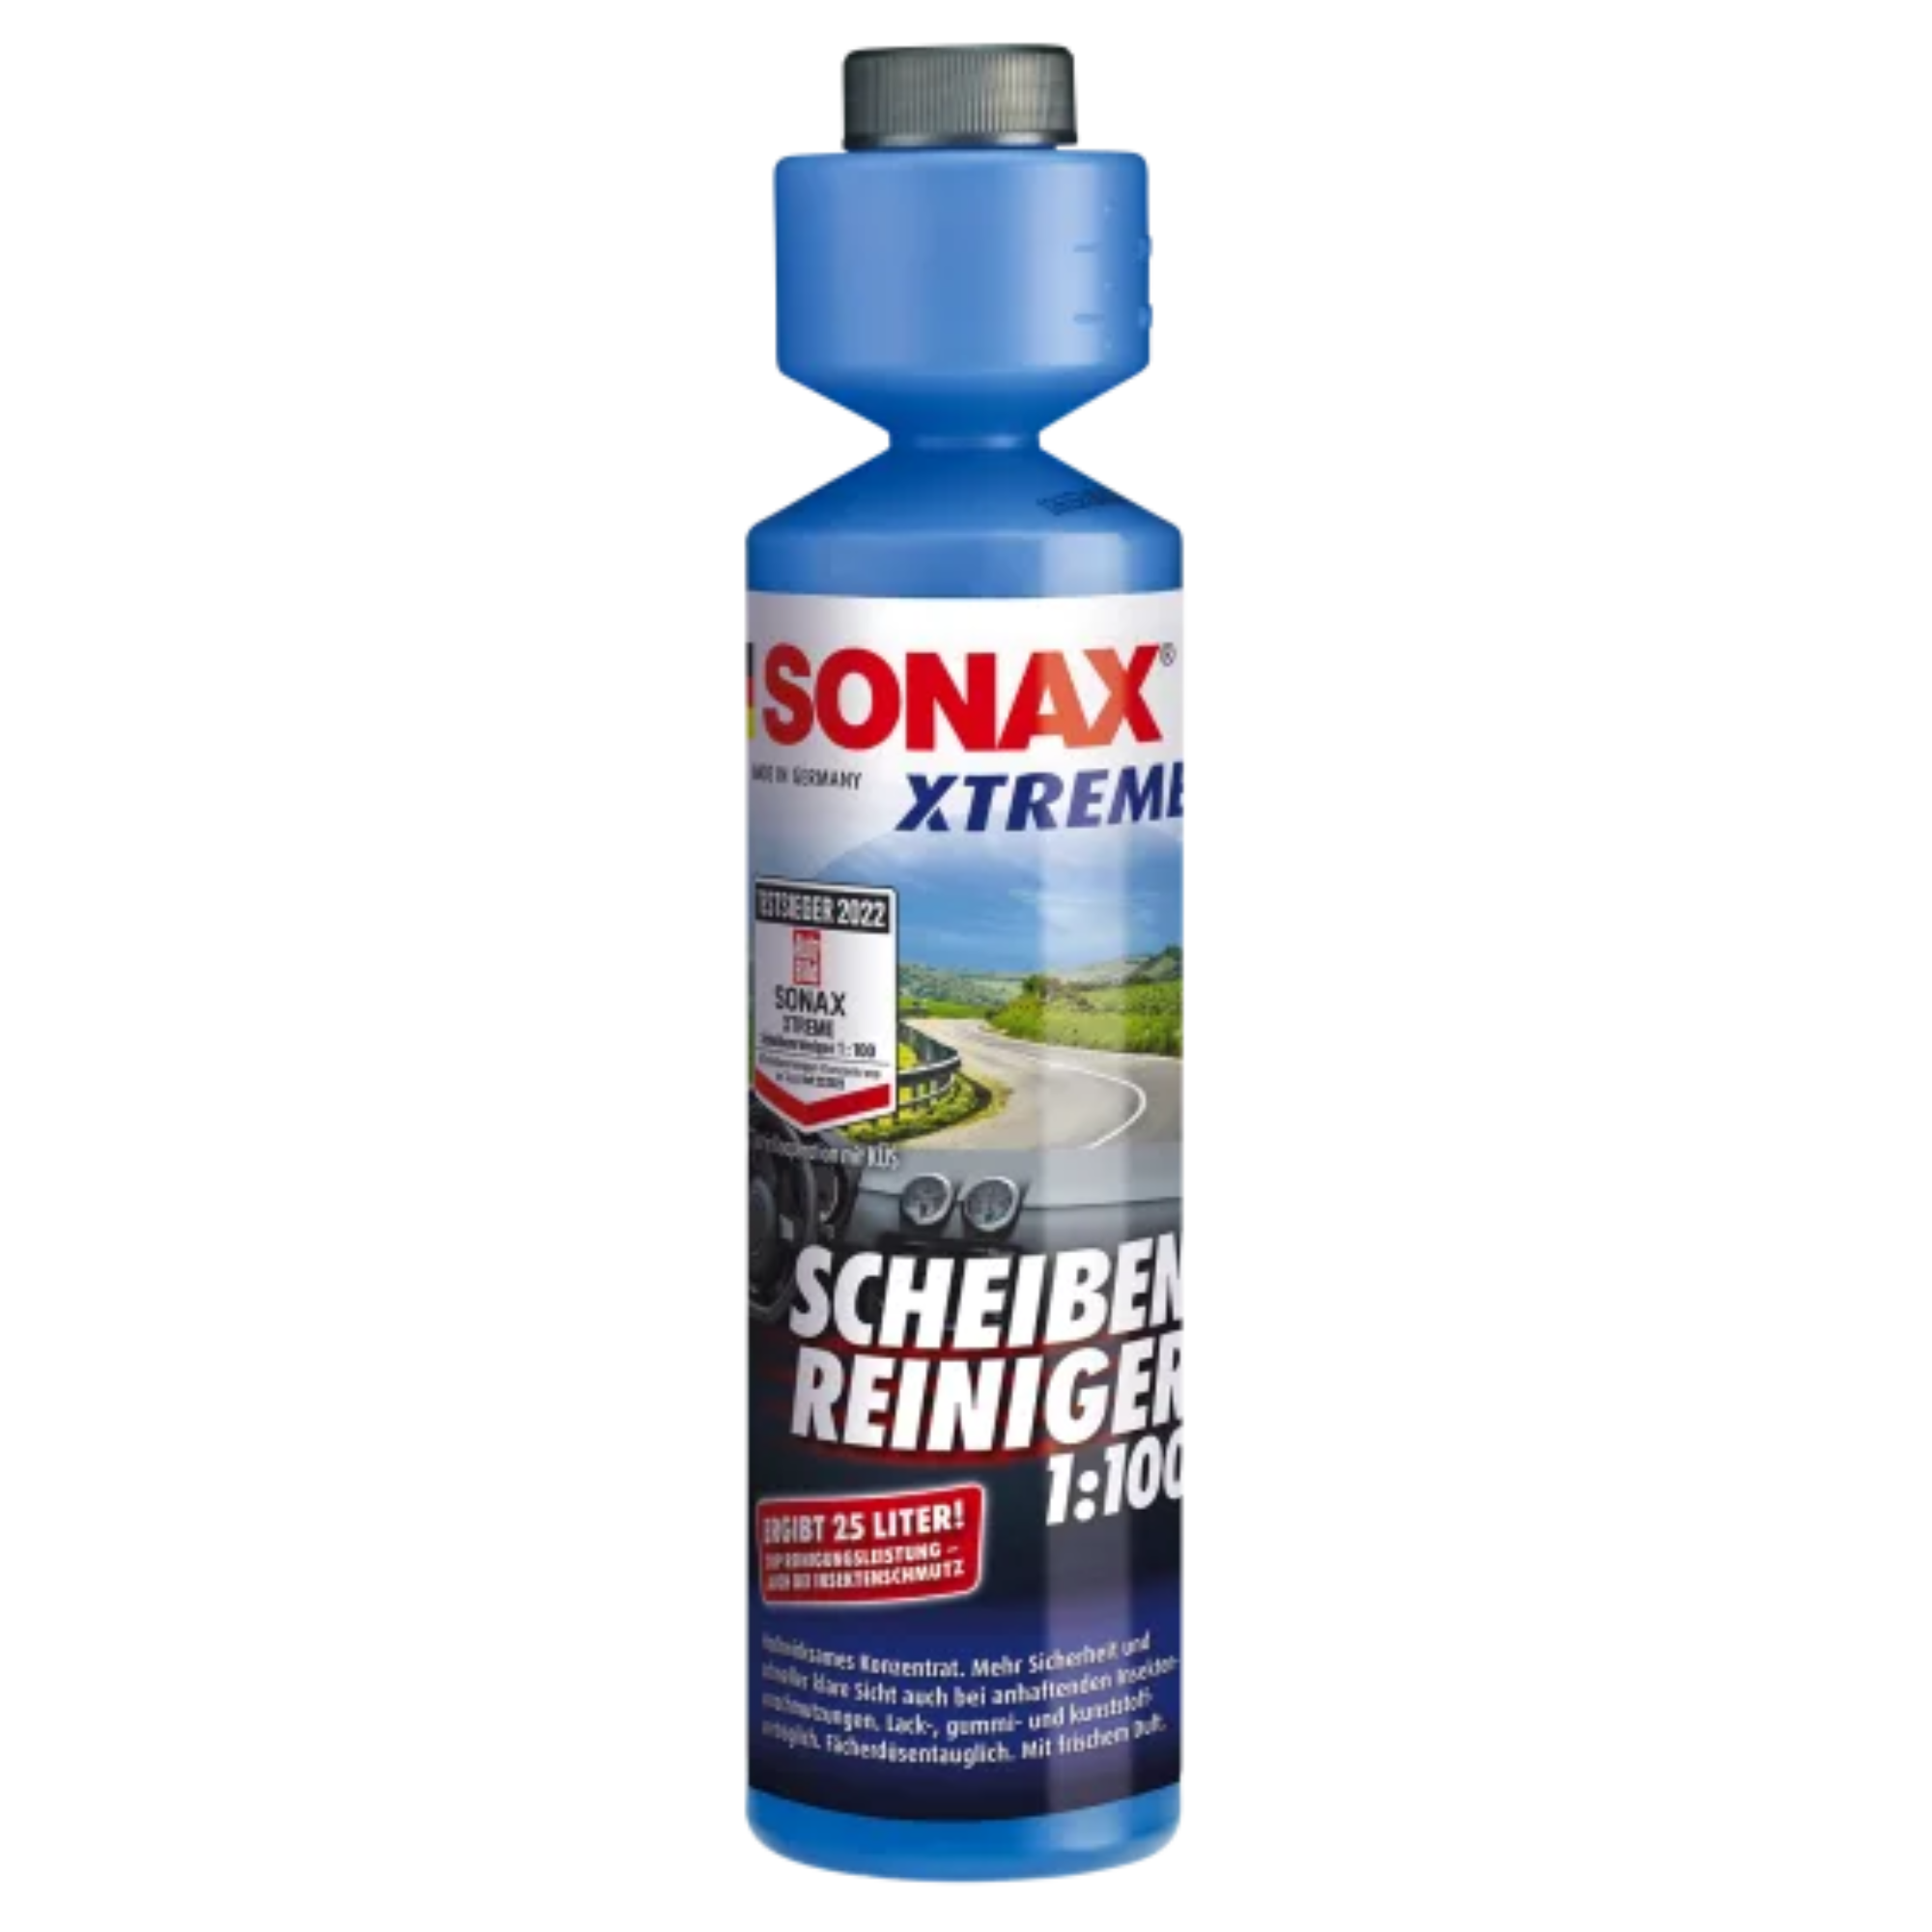 SONAX XTREME Scheibenreiniger 1:100 - 250ml